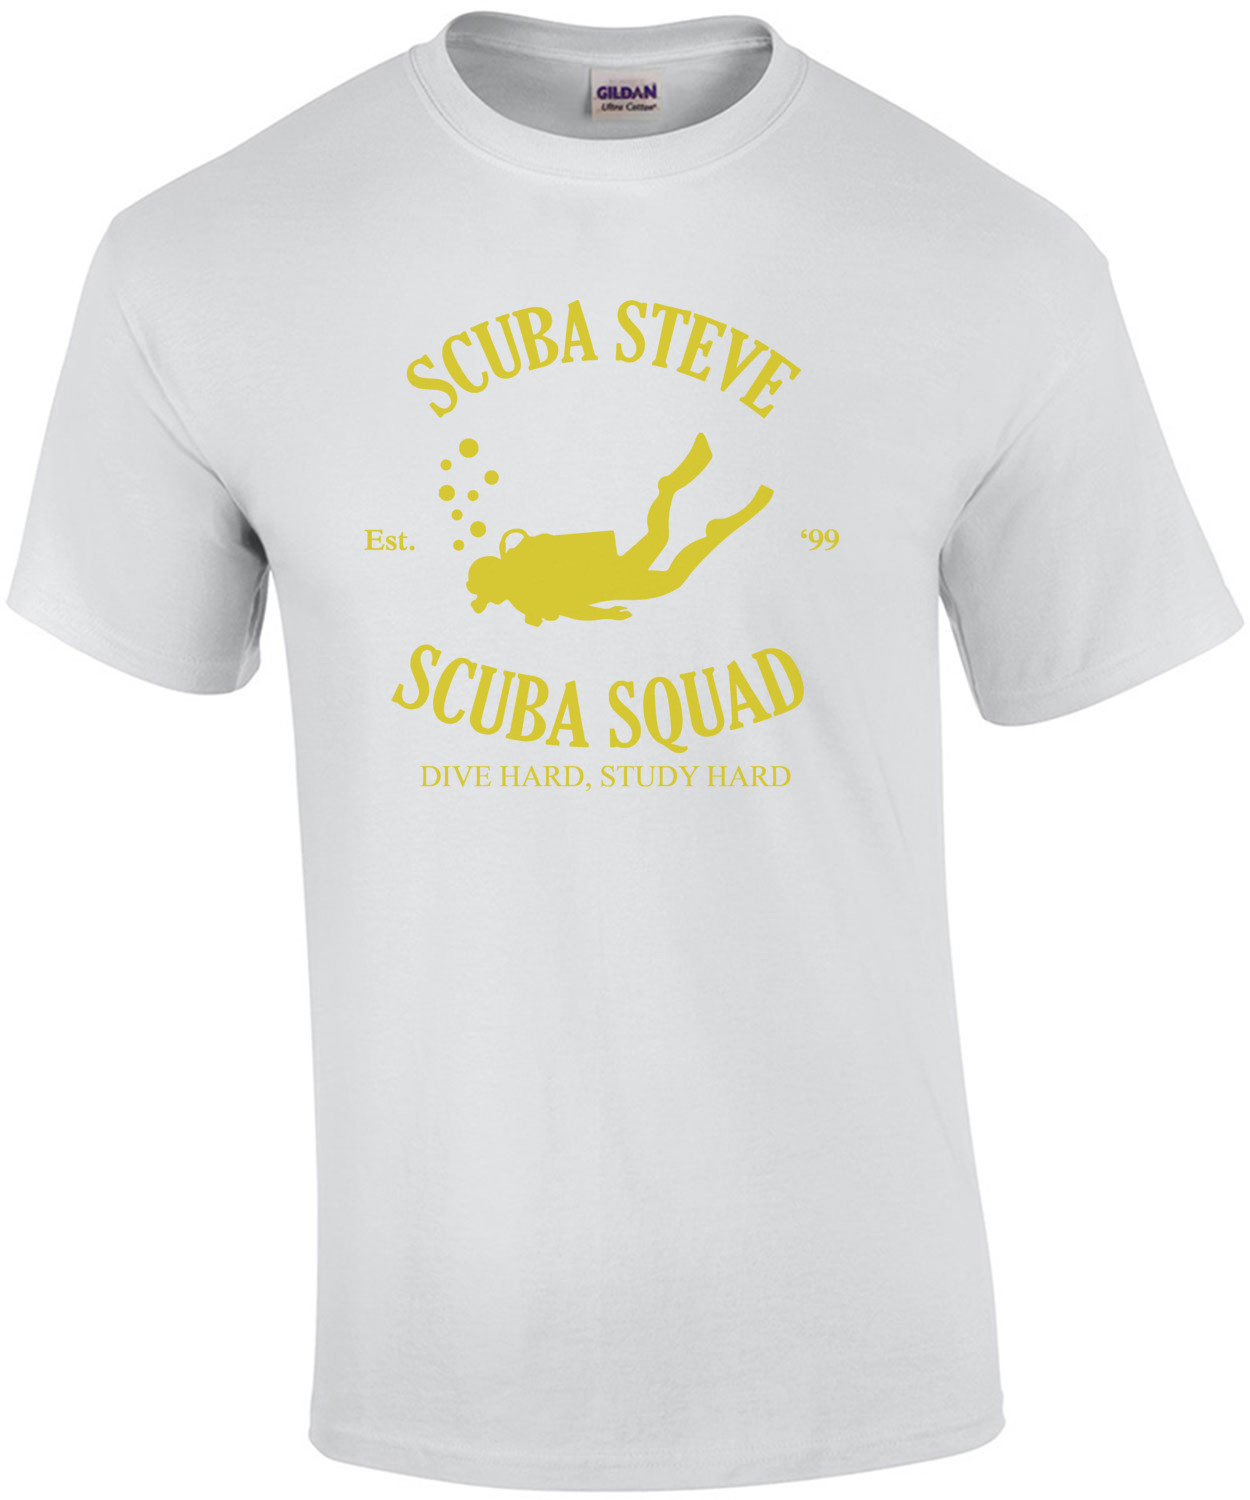 Scuba Steve Scuba Squad Big Daddy 